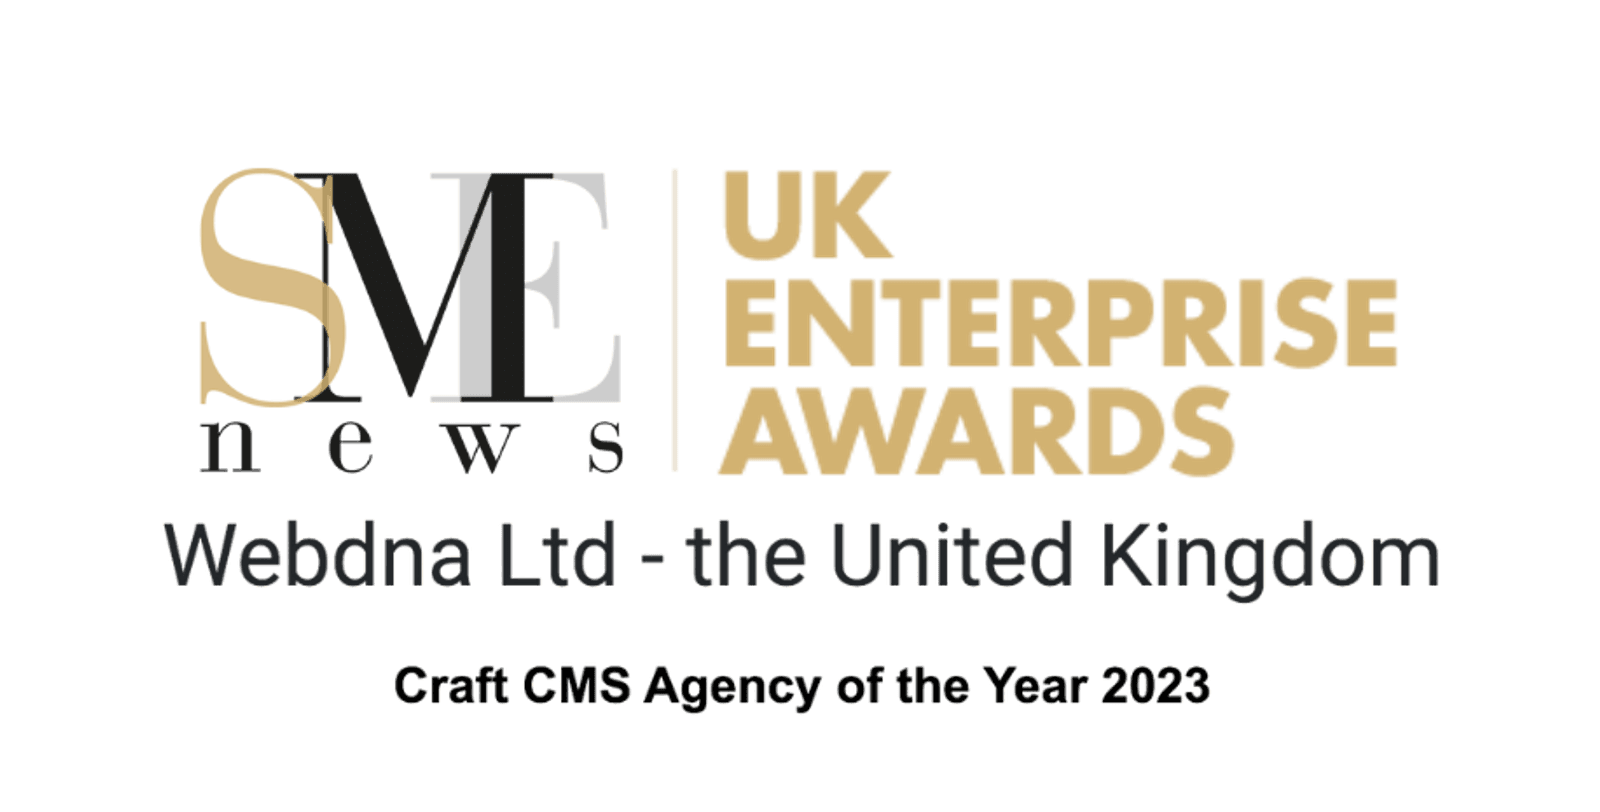 SME Enterprise Awards Craft CMS